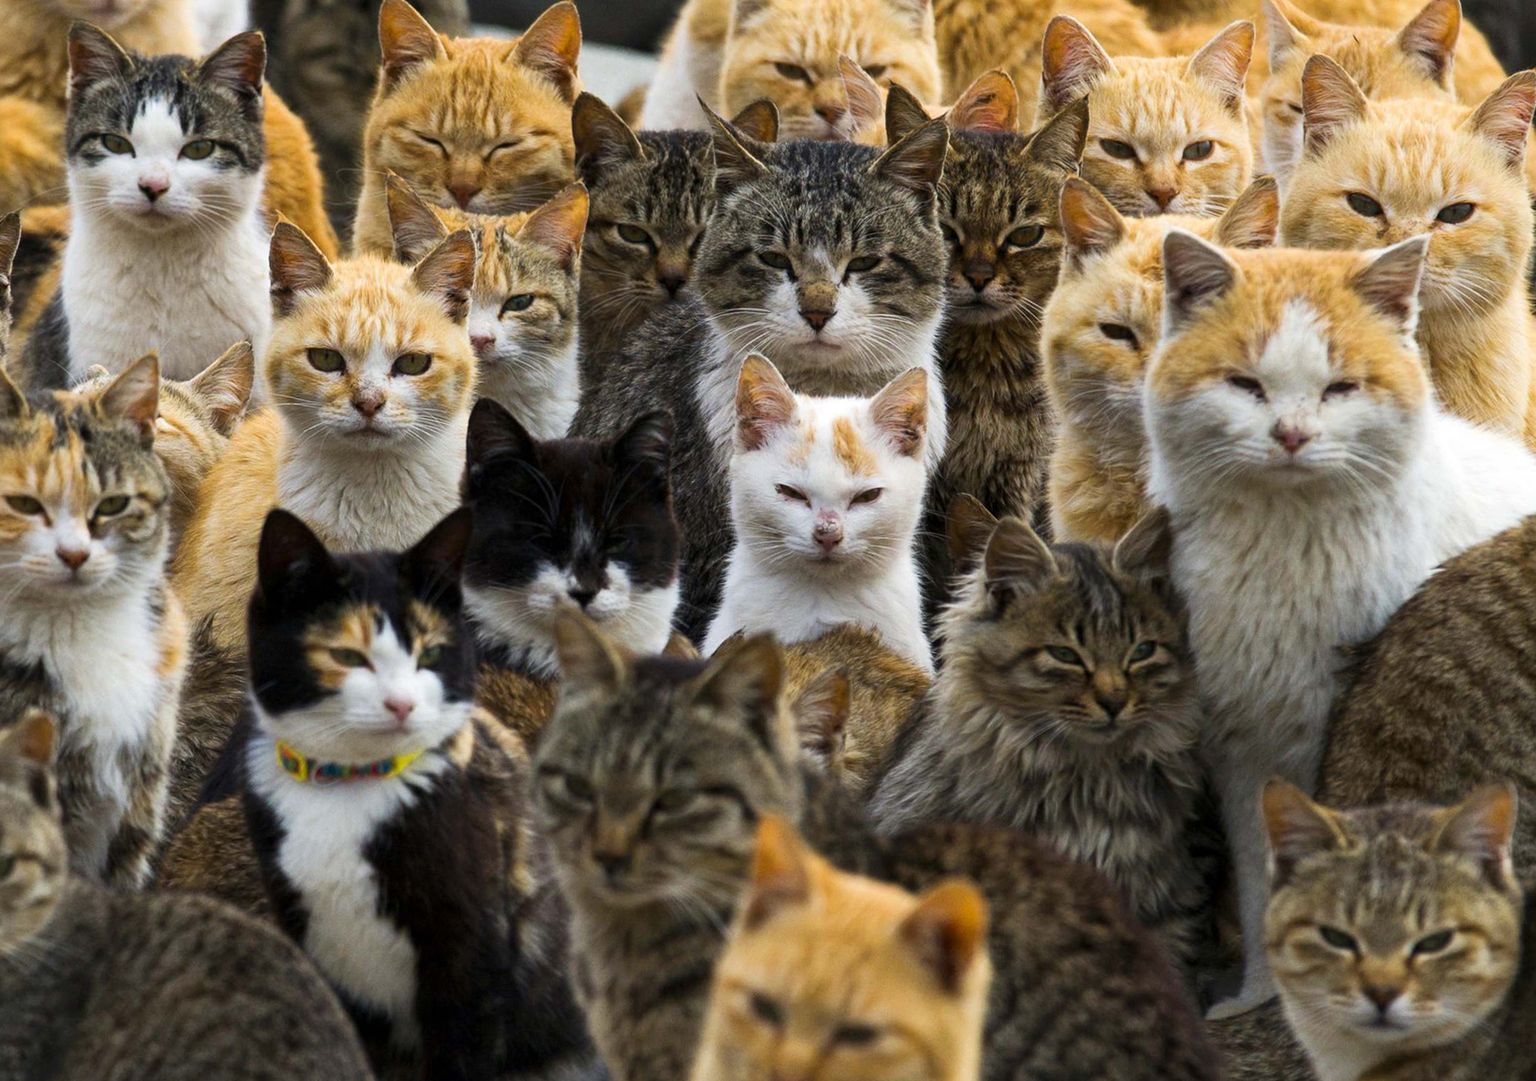 Pildil on palju emaseid kasse, kuid teadaolevalt pole ükski neist selle looga seotud.